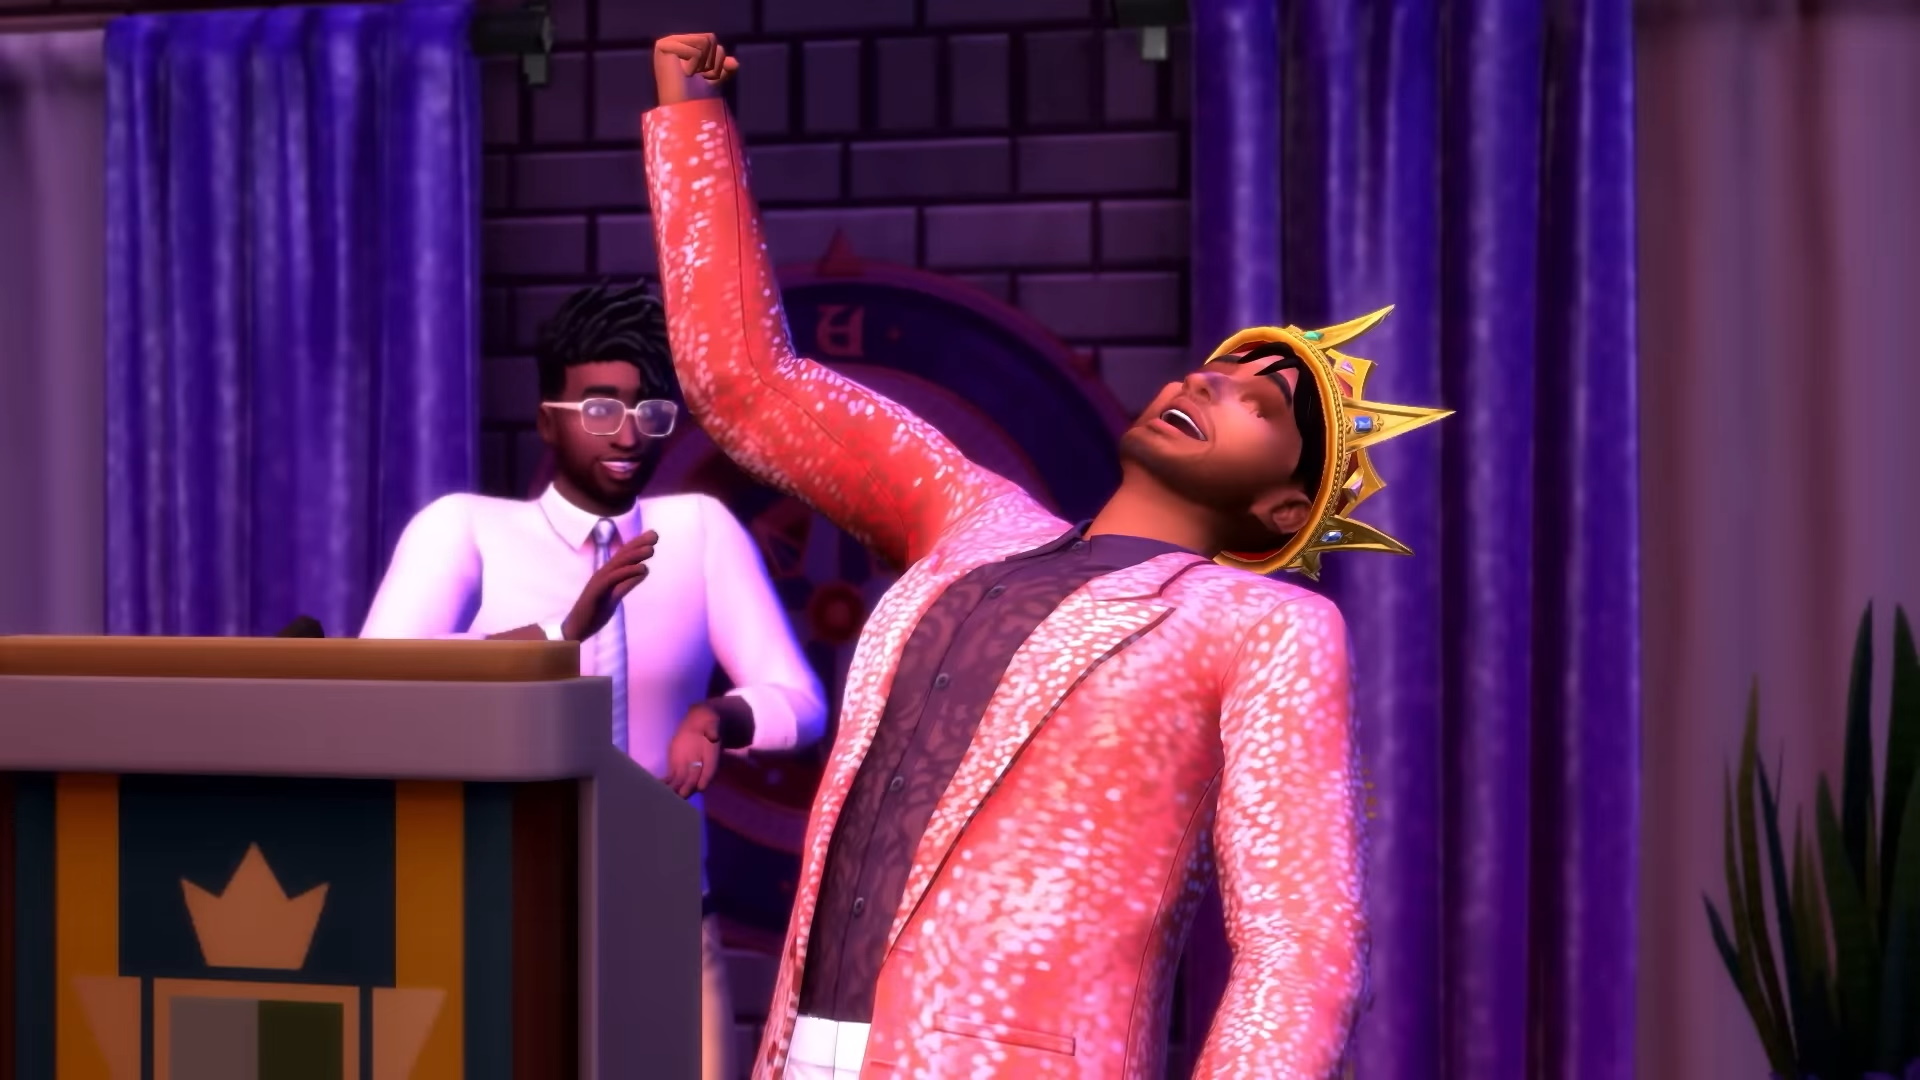 La nuova espansione di Sims 4 offre più possibilità di personalizzazione che mai